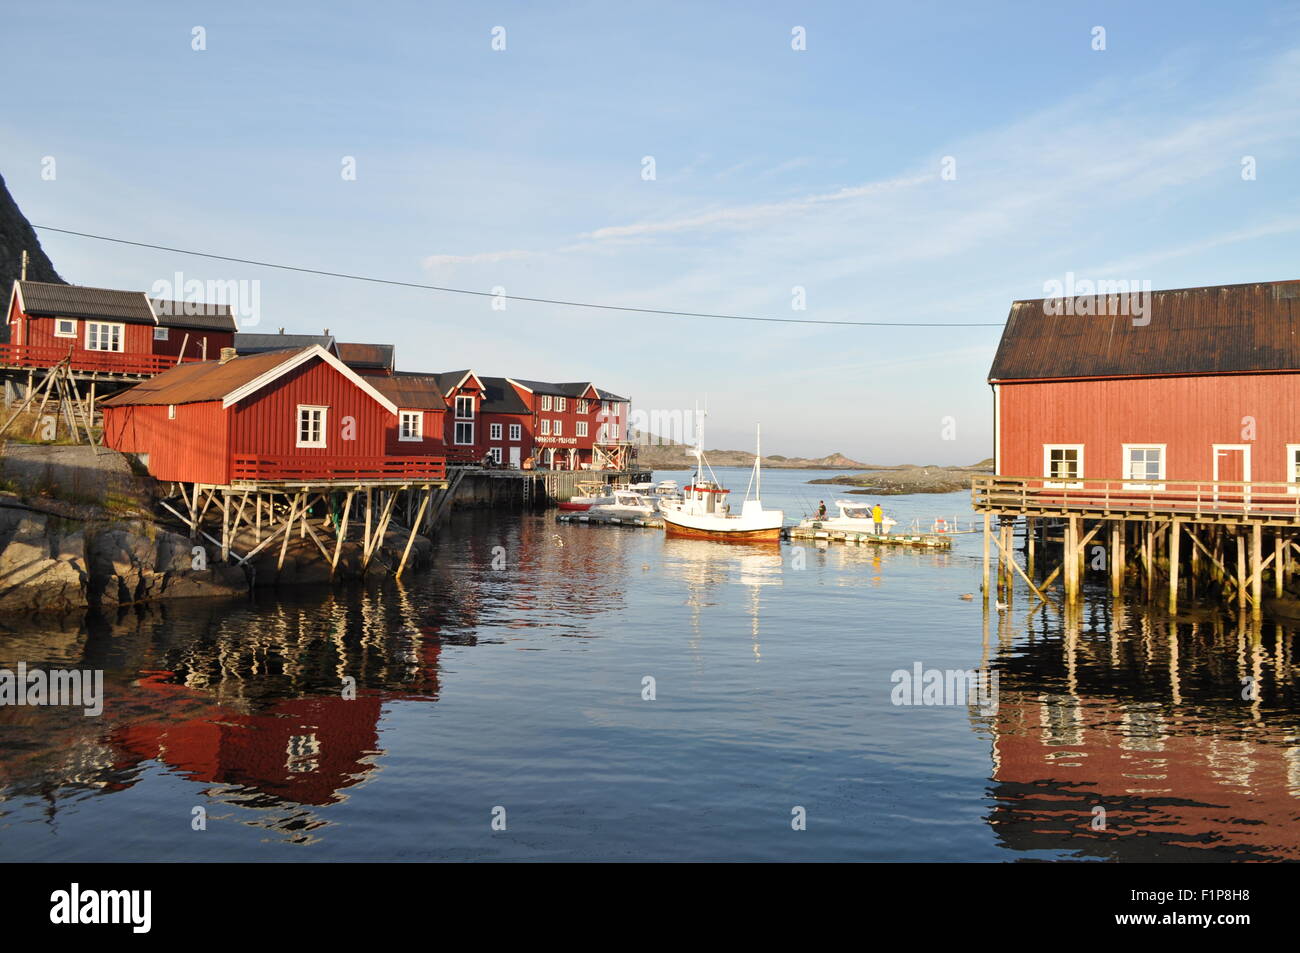 Lofoten Islands: Å i Lofoten, the fisherman's village, with rorbu Stock Photo